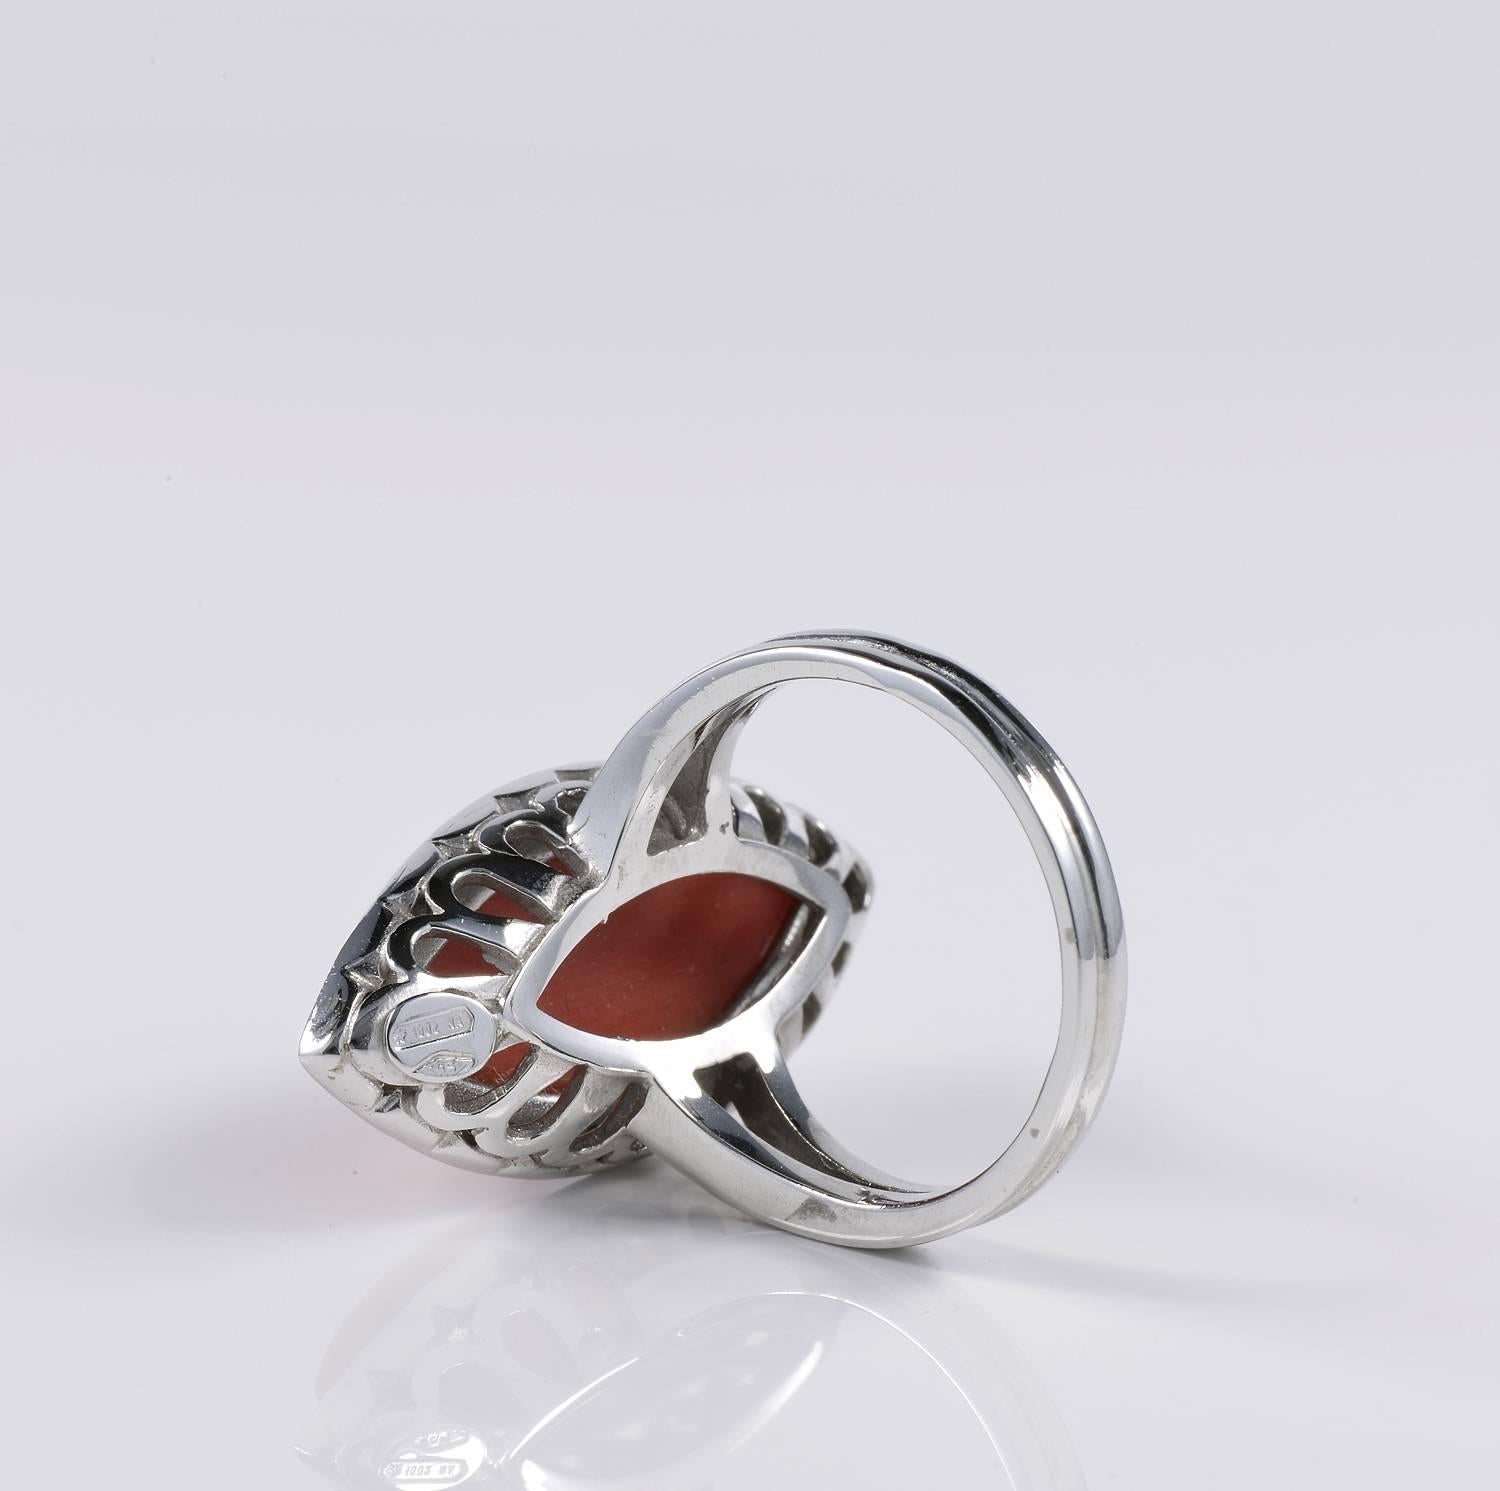 sardinian wedding ring